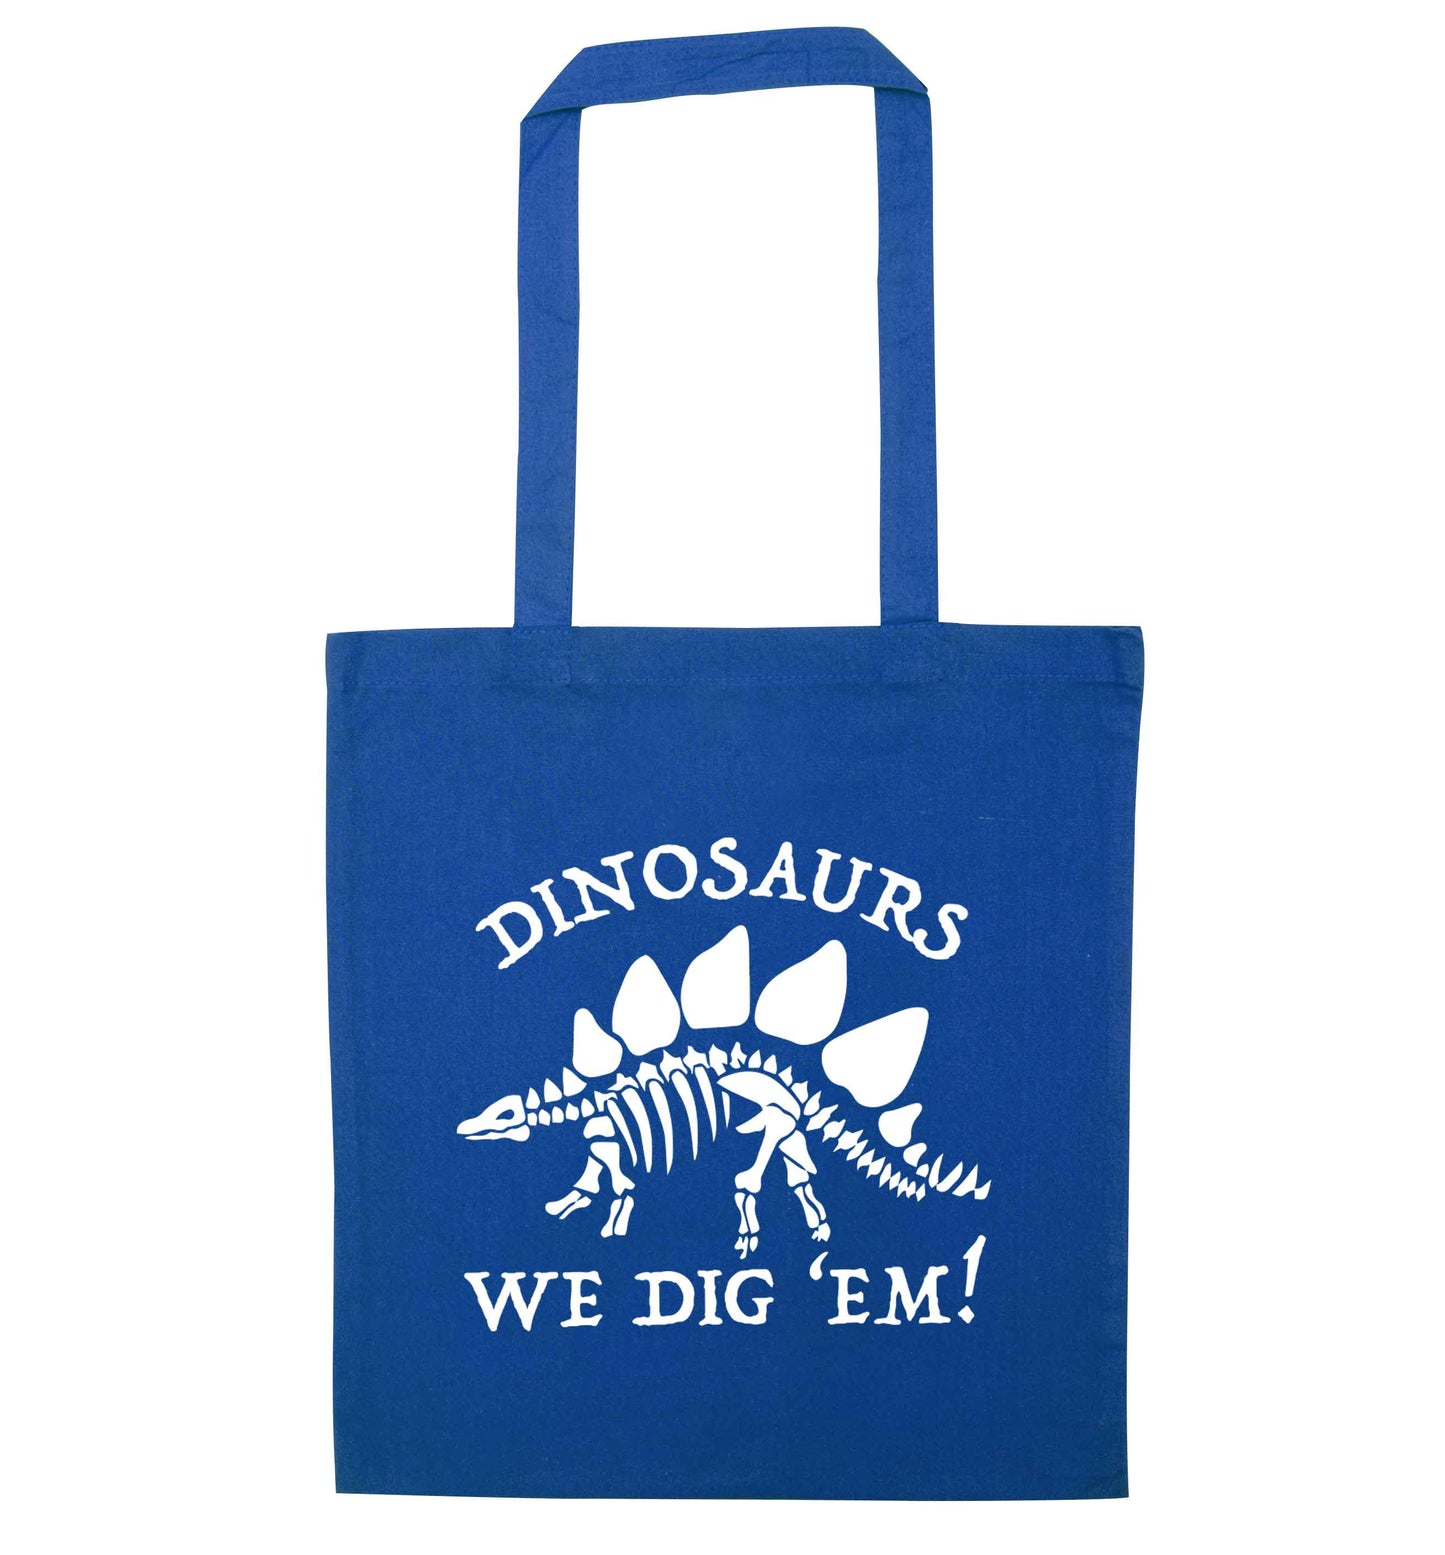 Dinosaurs we dig 'em! blue tote bag